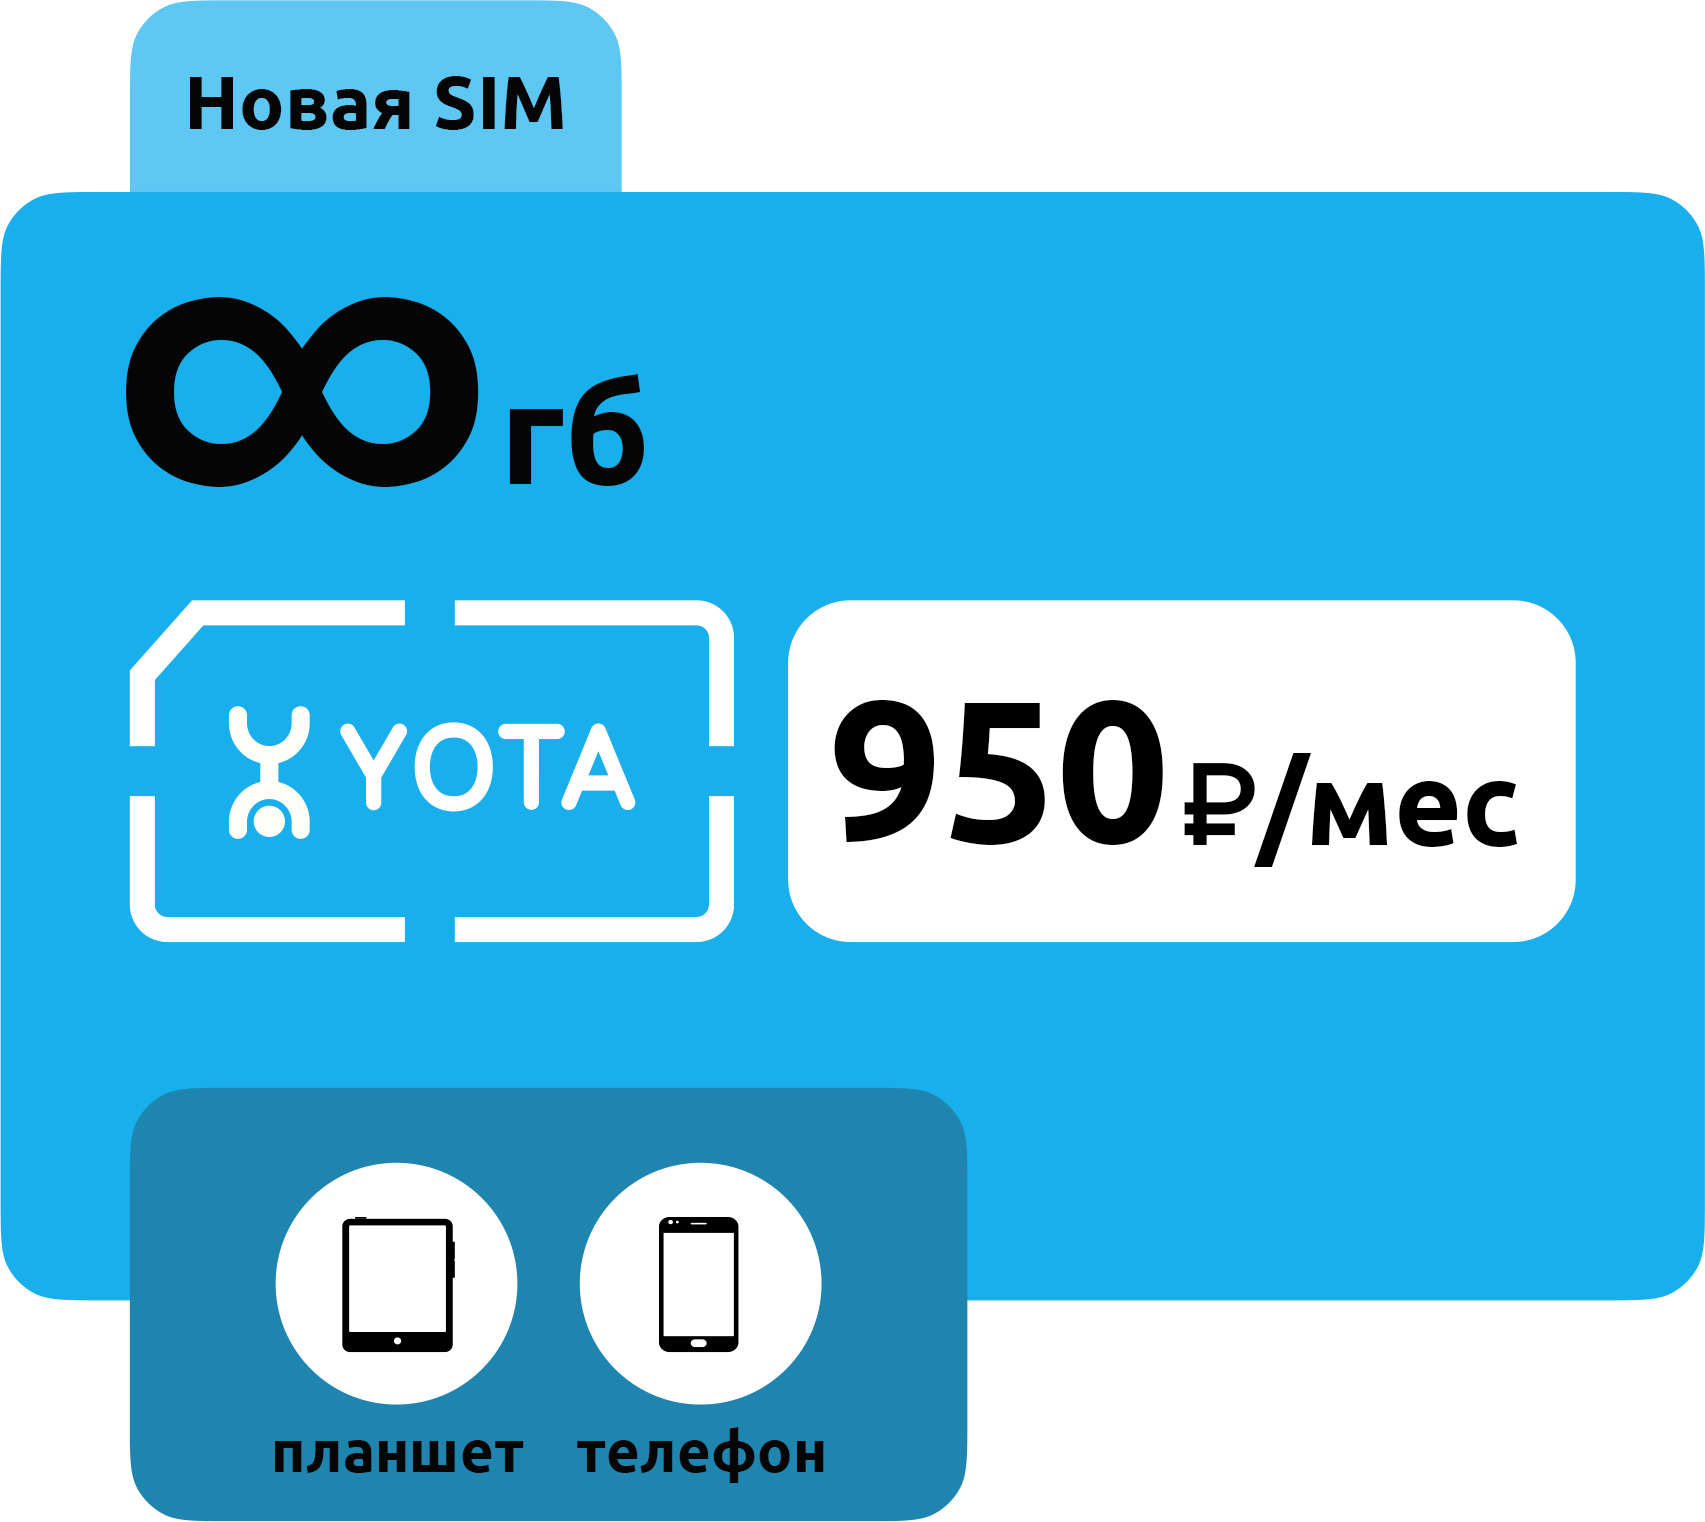 SIM-карта Yota 950